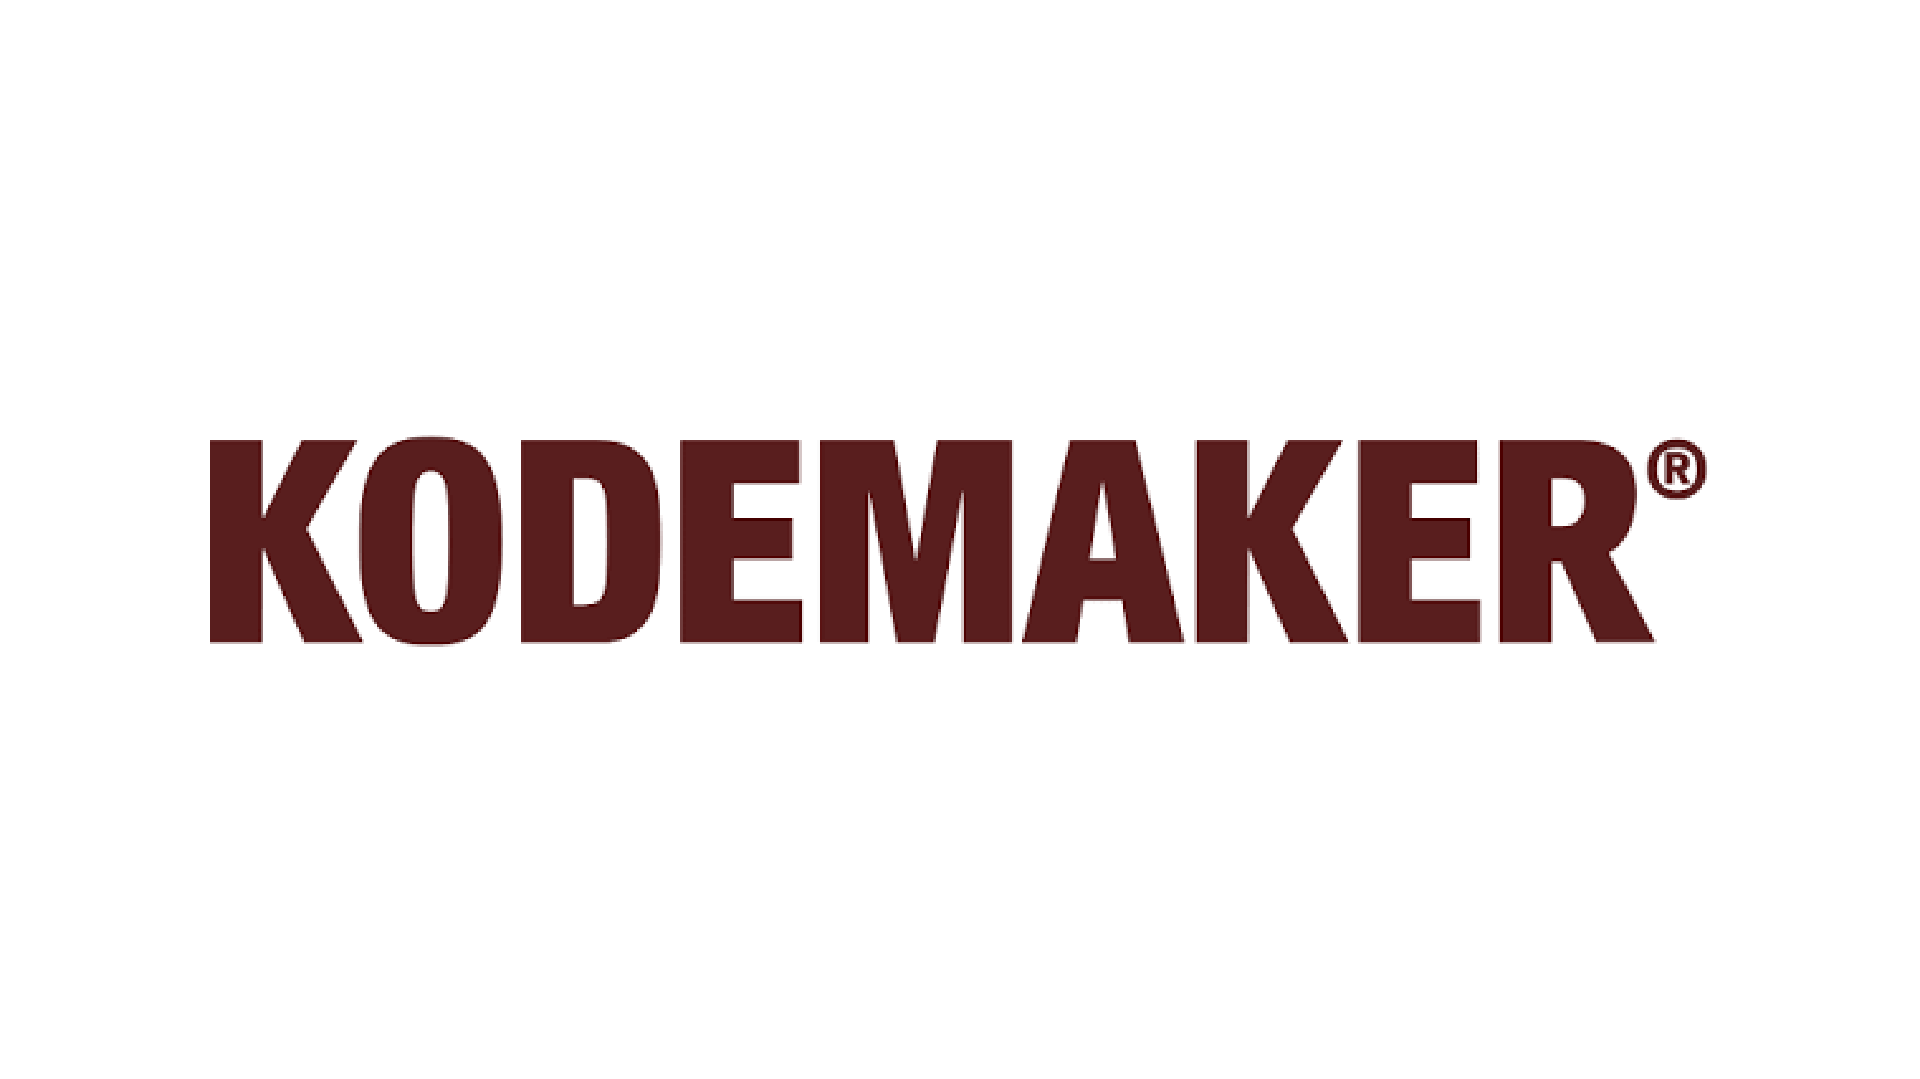 kodemaker logo 1920x1080